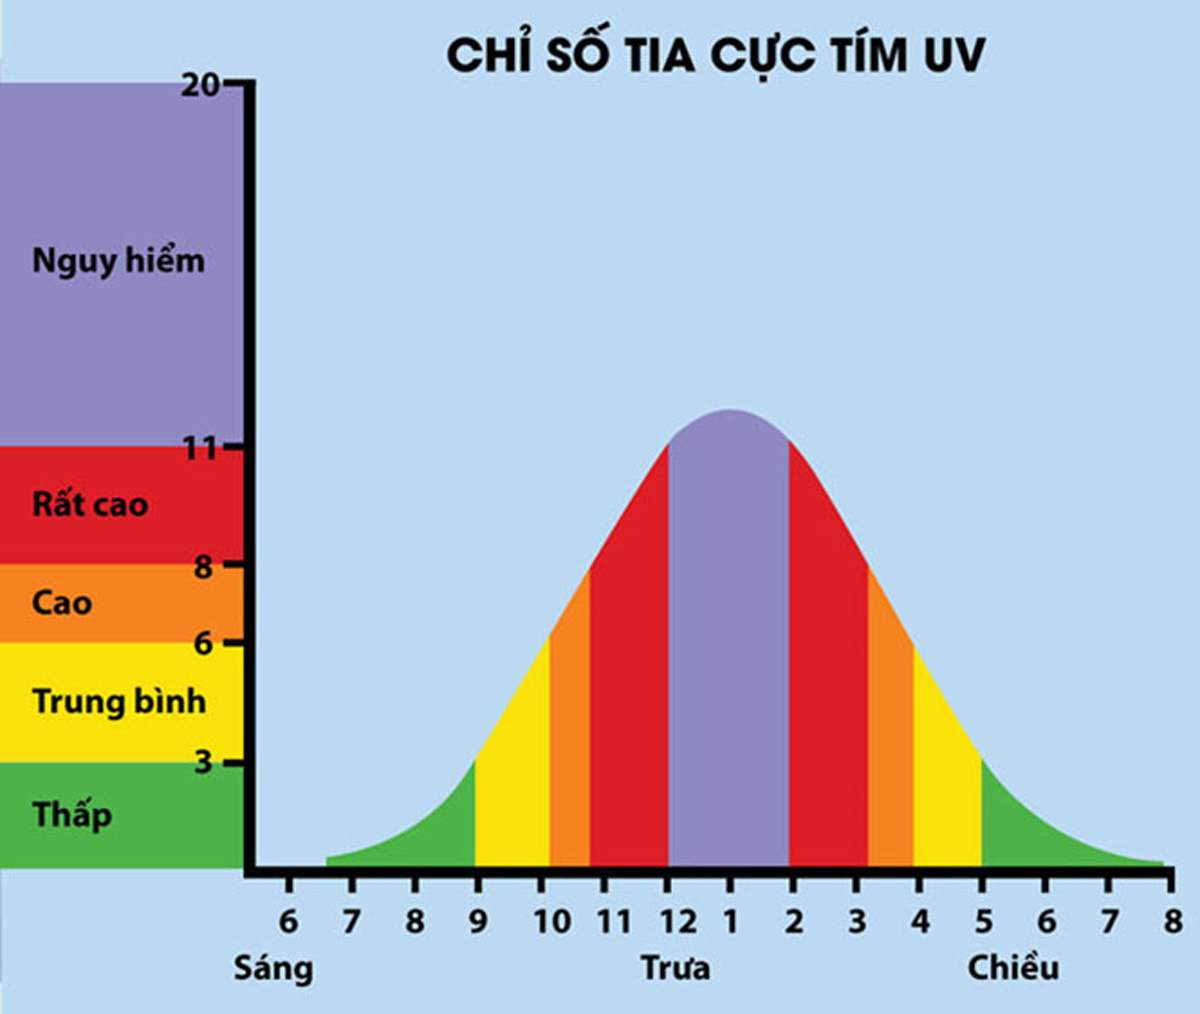 Chỉ số tia cực tím (UV) vượt ngưỡng an toàn trong khoảng 10g – 16g